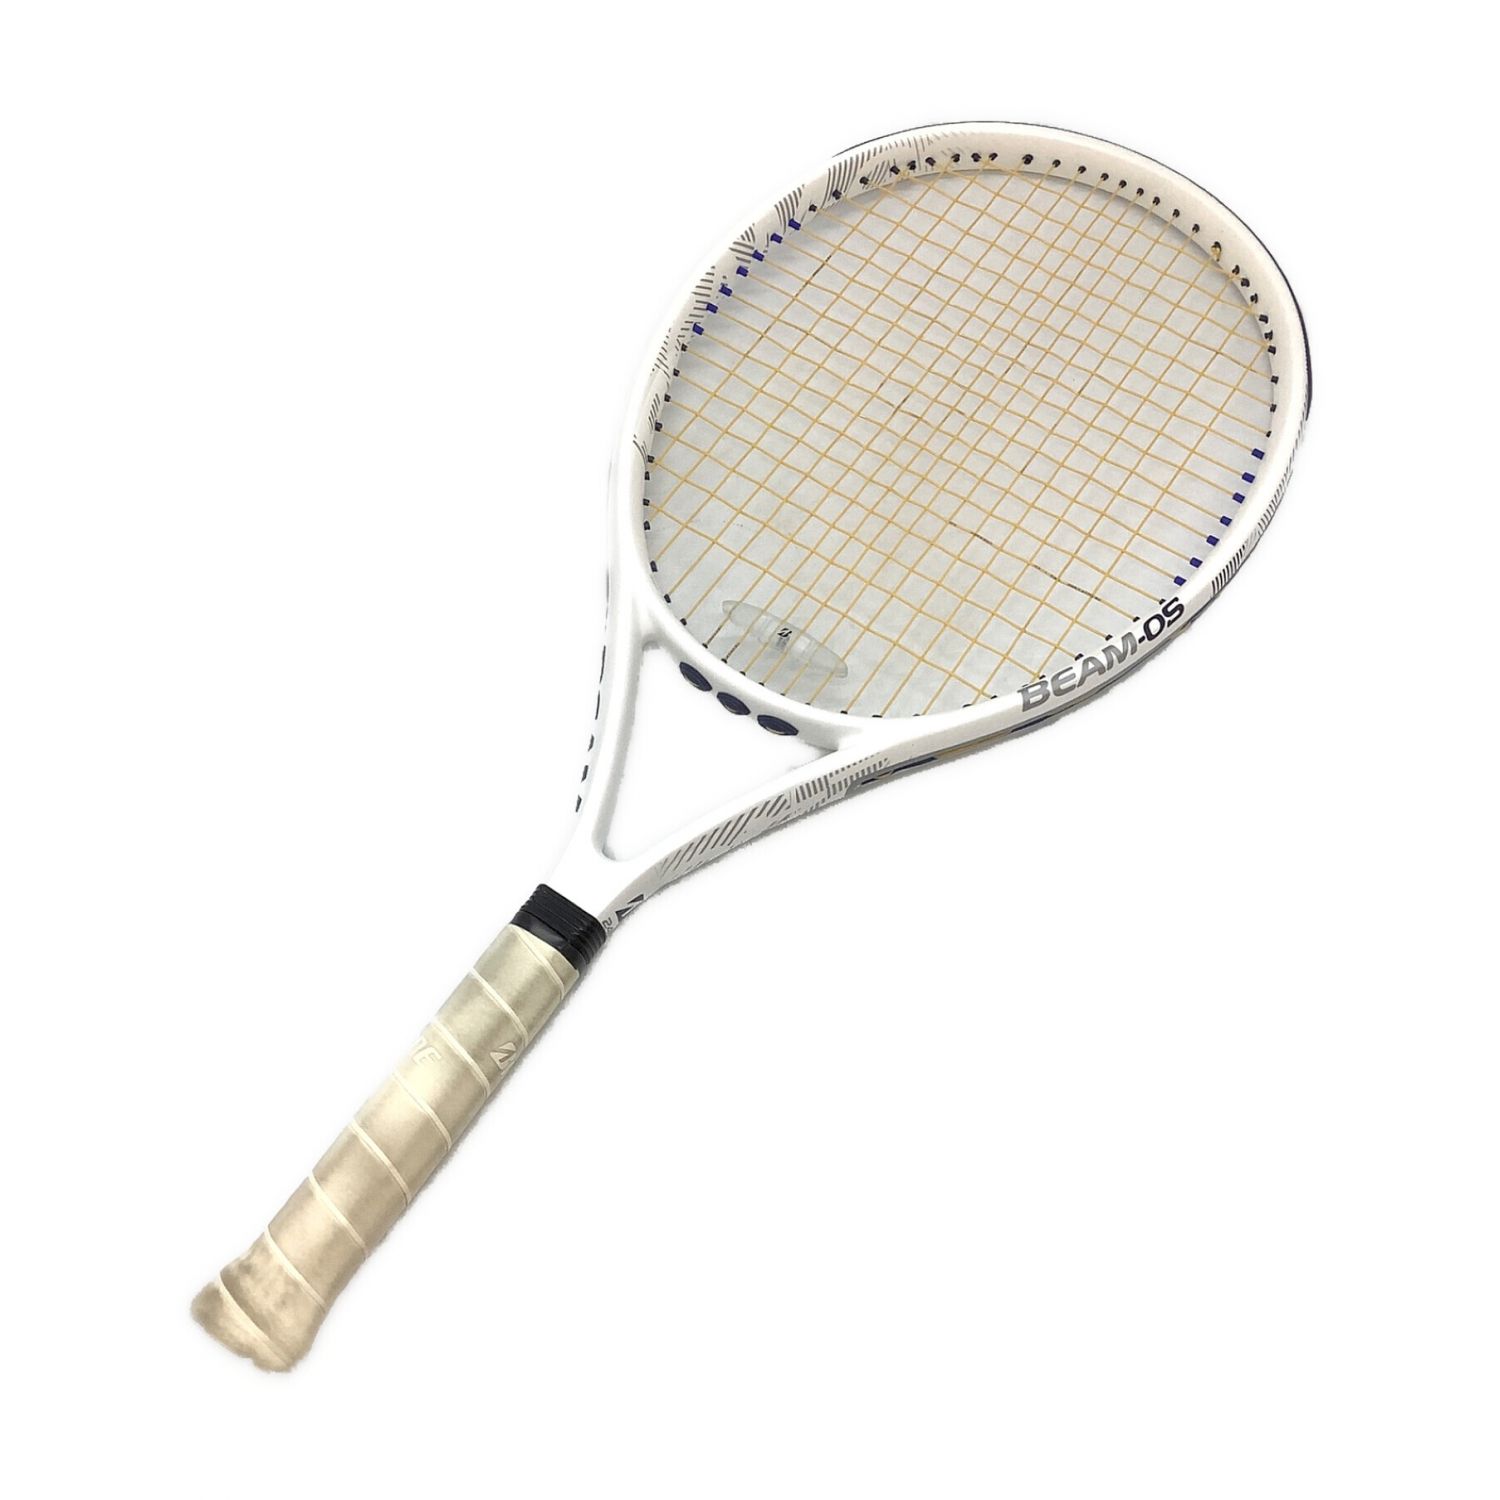 テニスラケット ブリヂストン ビーム OS 240 2017年モデル (G1)BRIDGESTONE BEAM-OS 240 2017